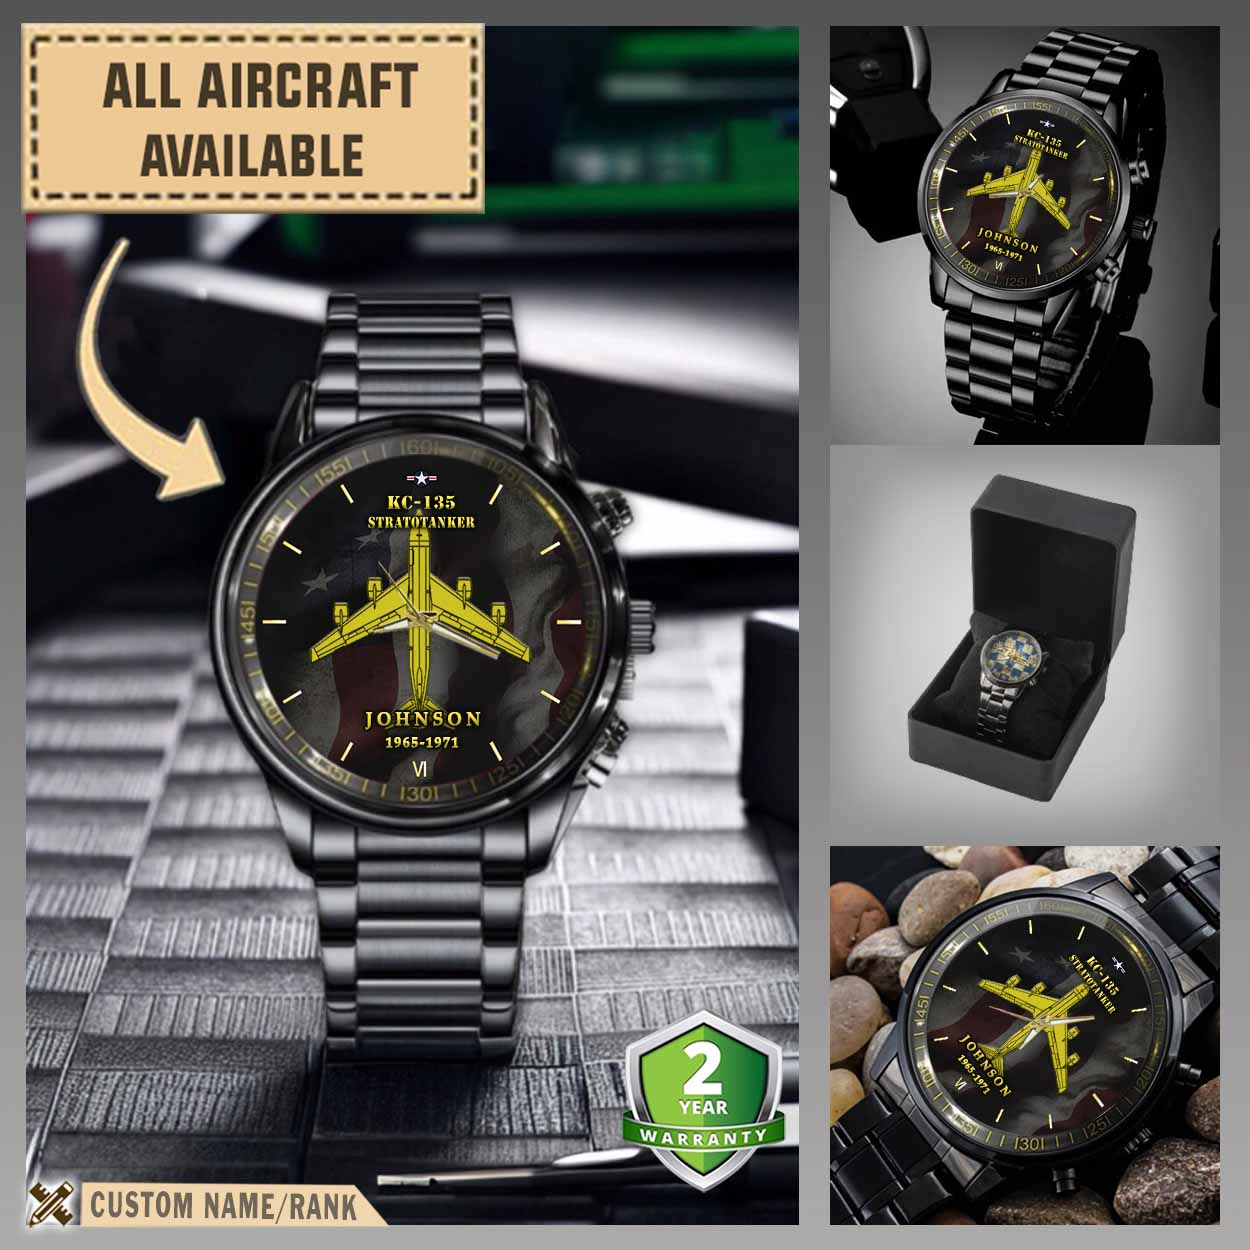 kc 135 stratotanker kc135aircraft black wrist watch 265cn